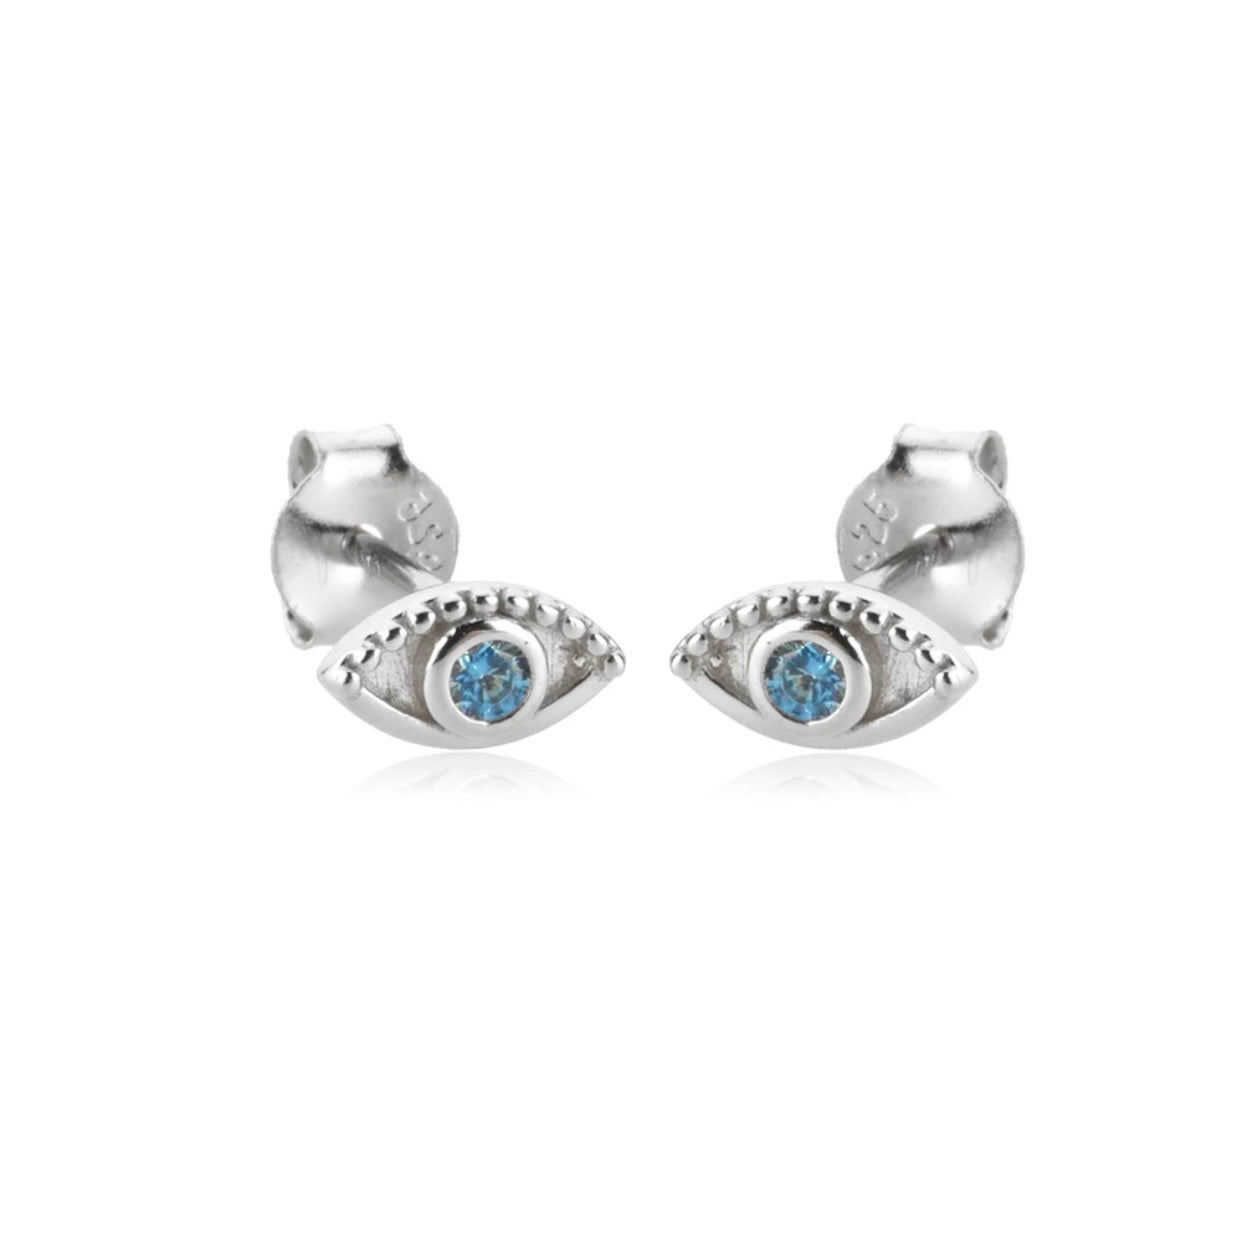 Crystal eye studs earrings